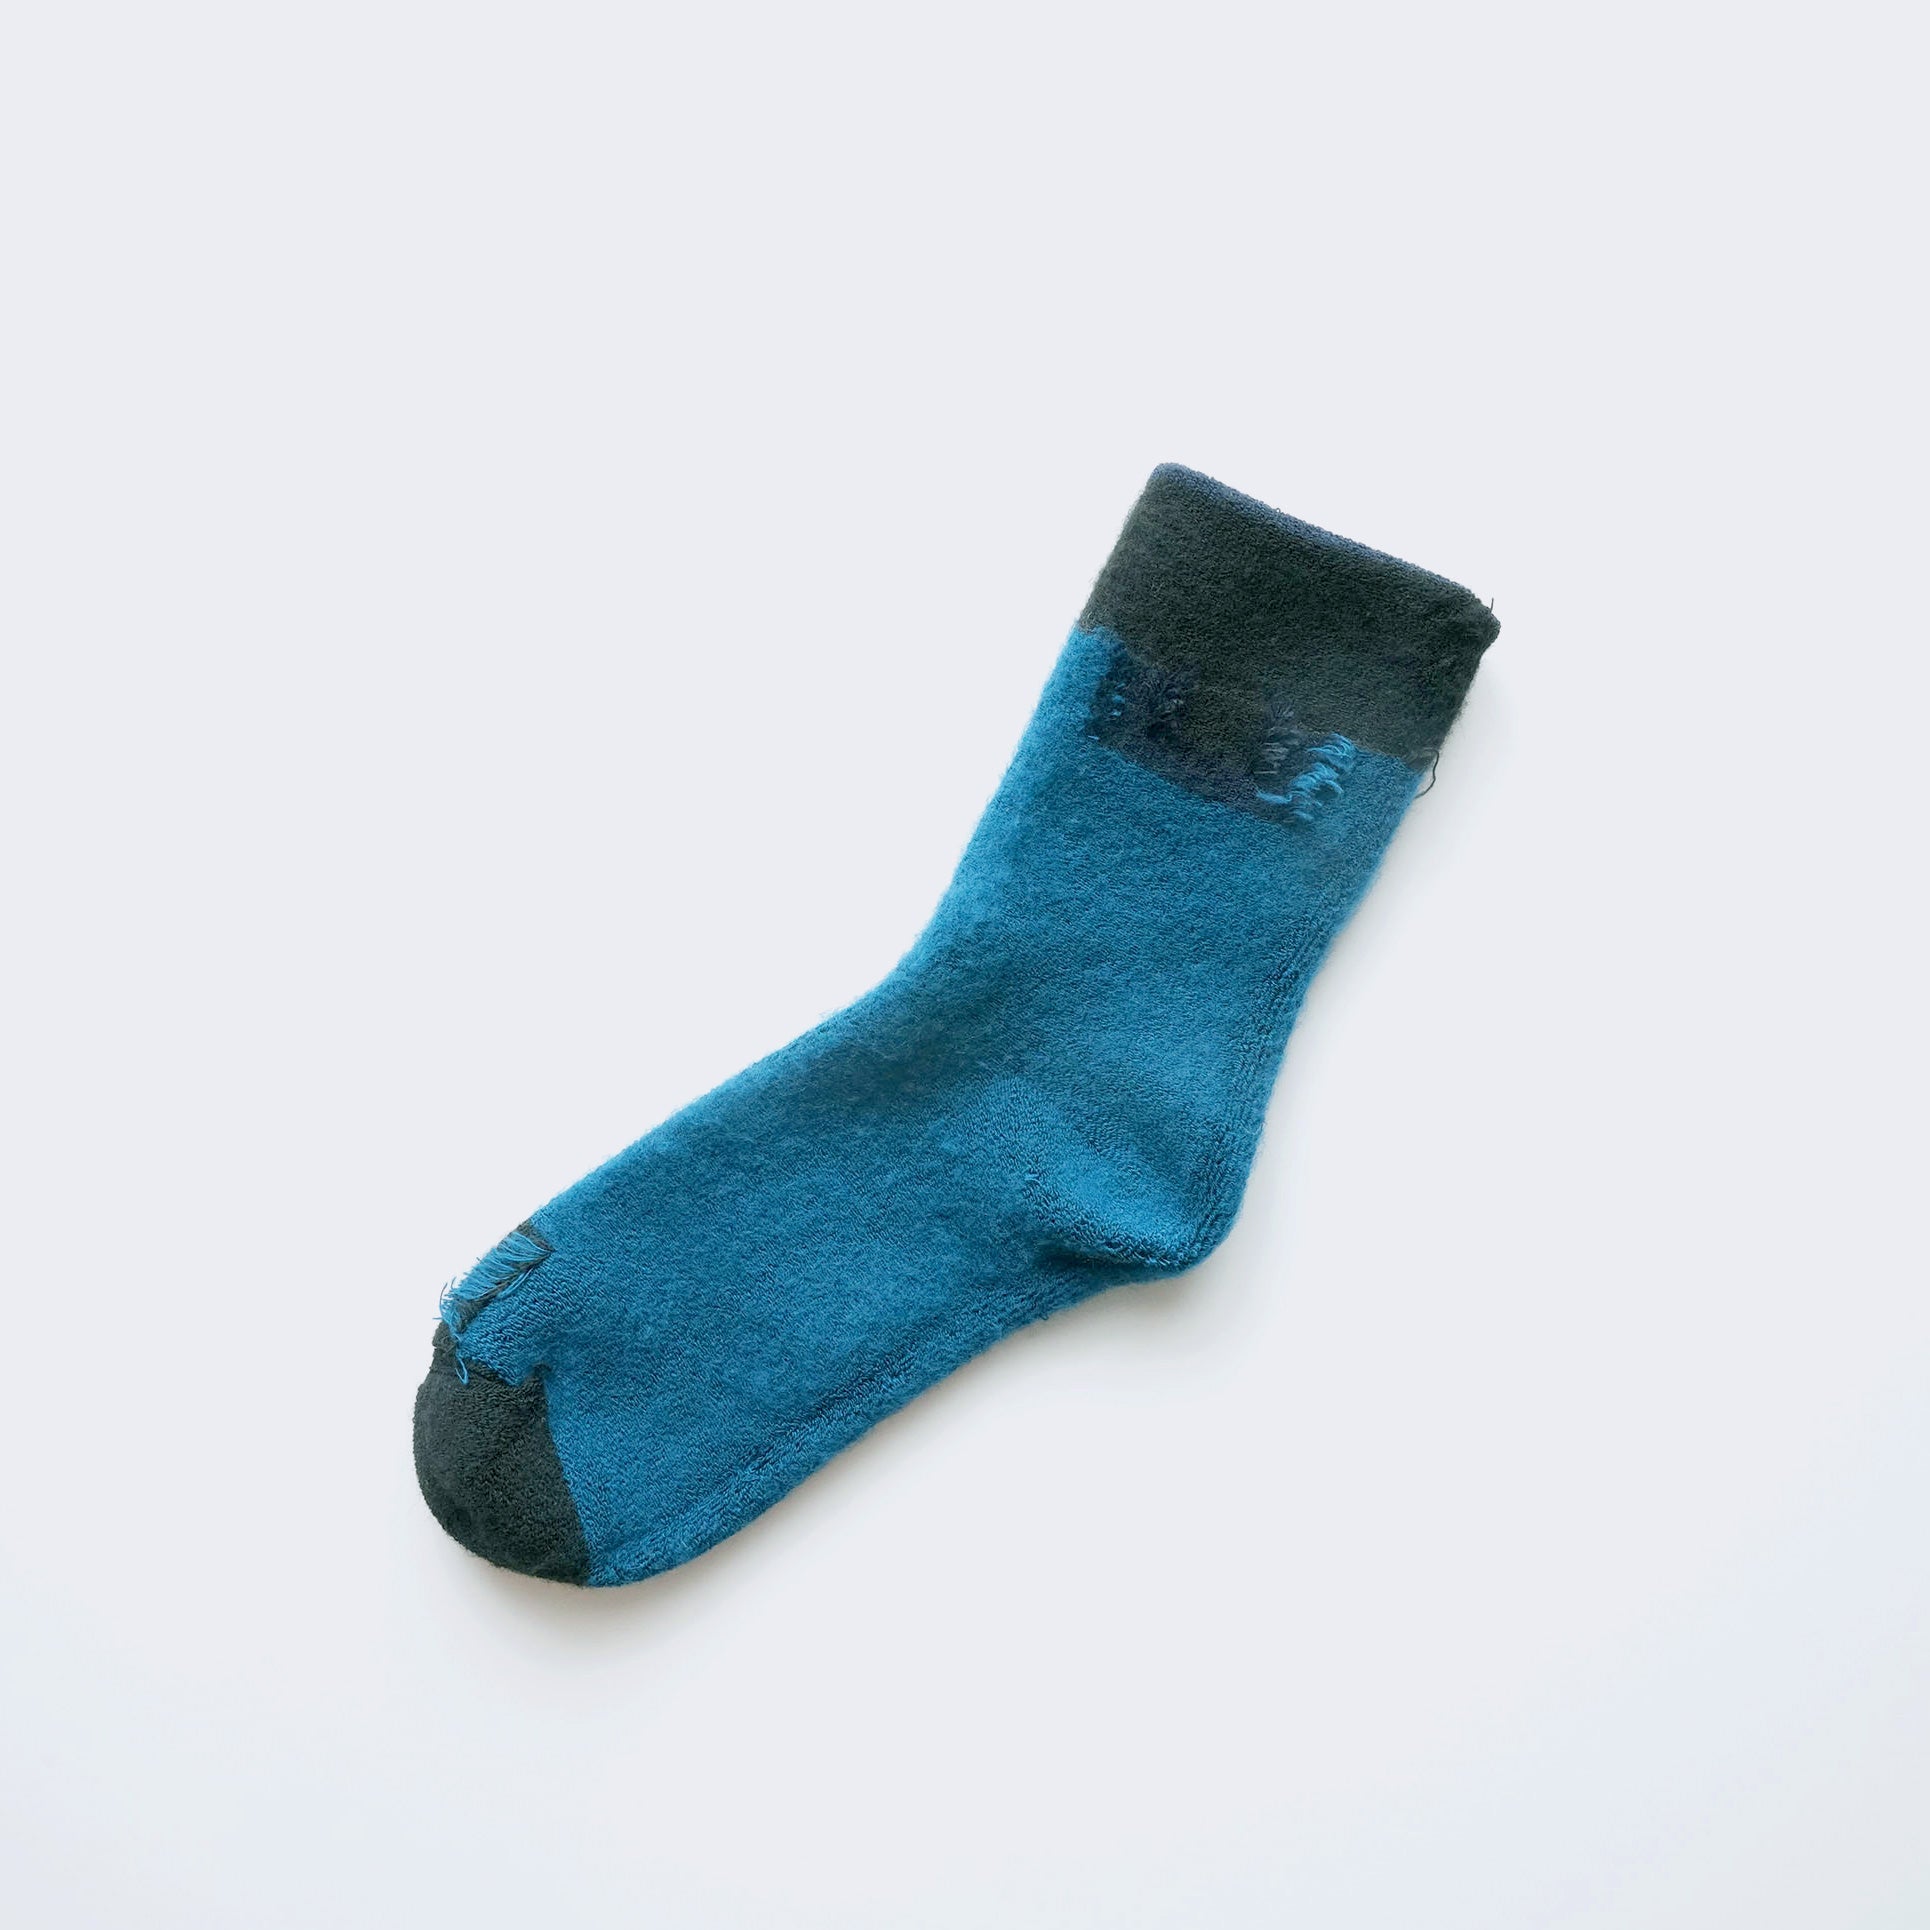 WINDOW-rich terry socks